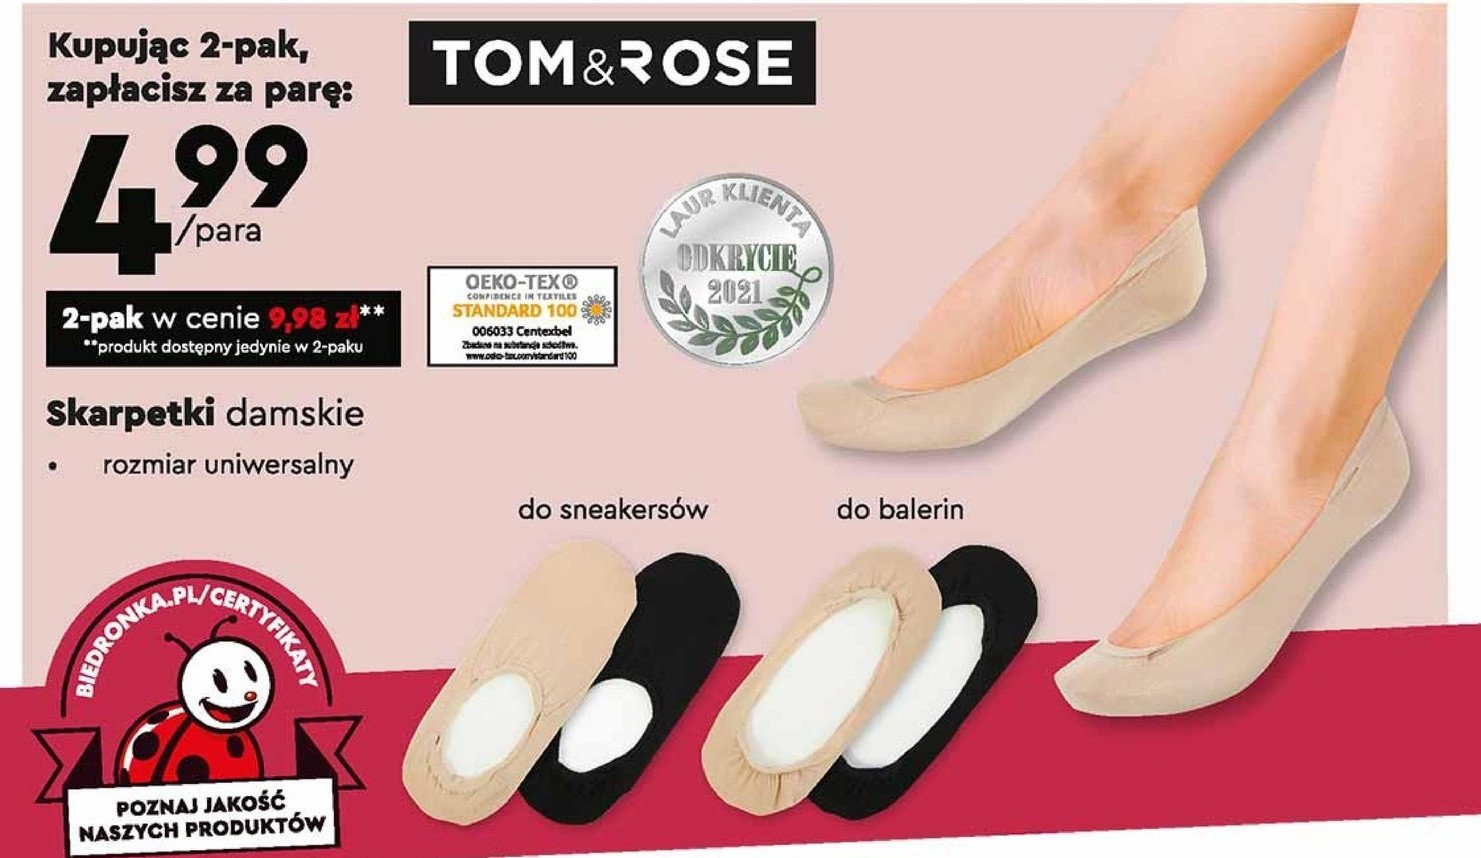 Skarpetki damskie Tom & rose promocja